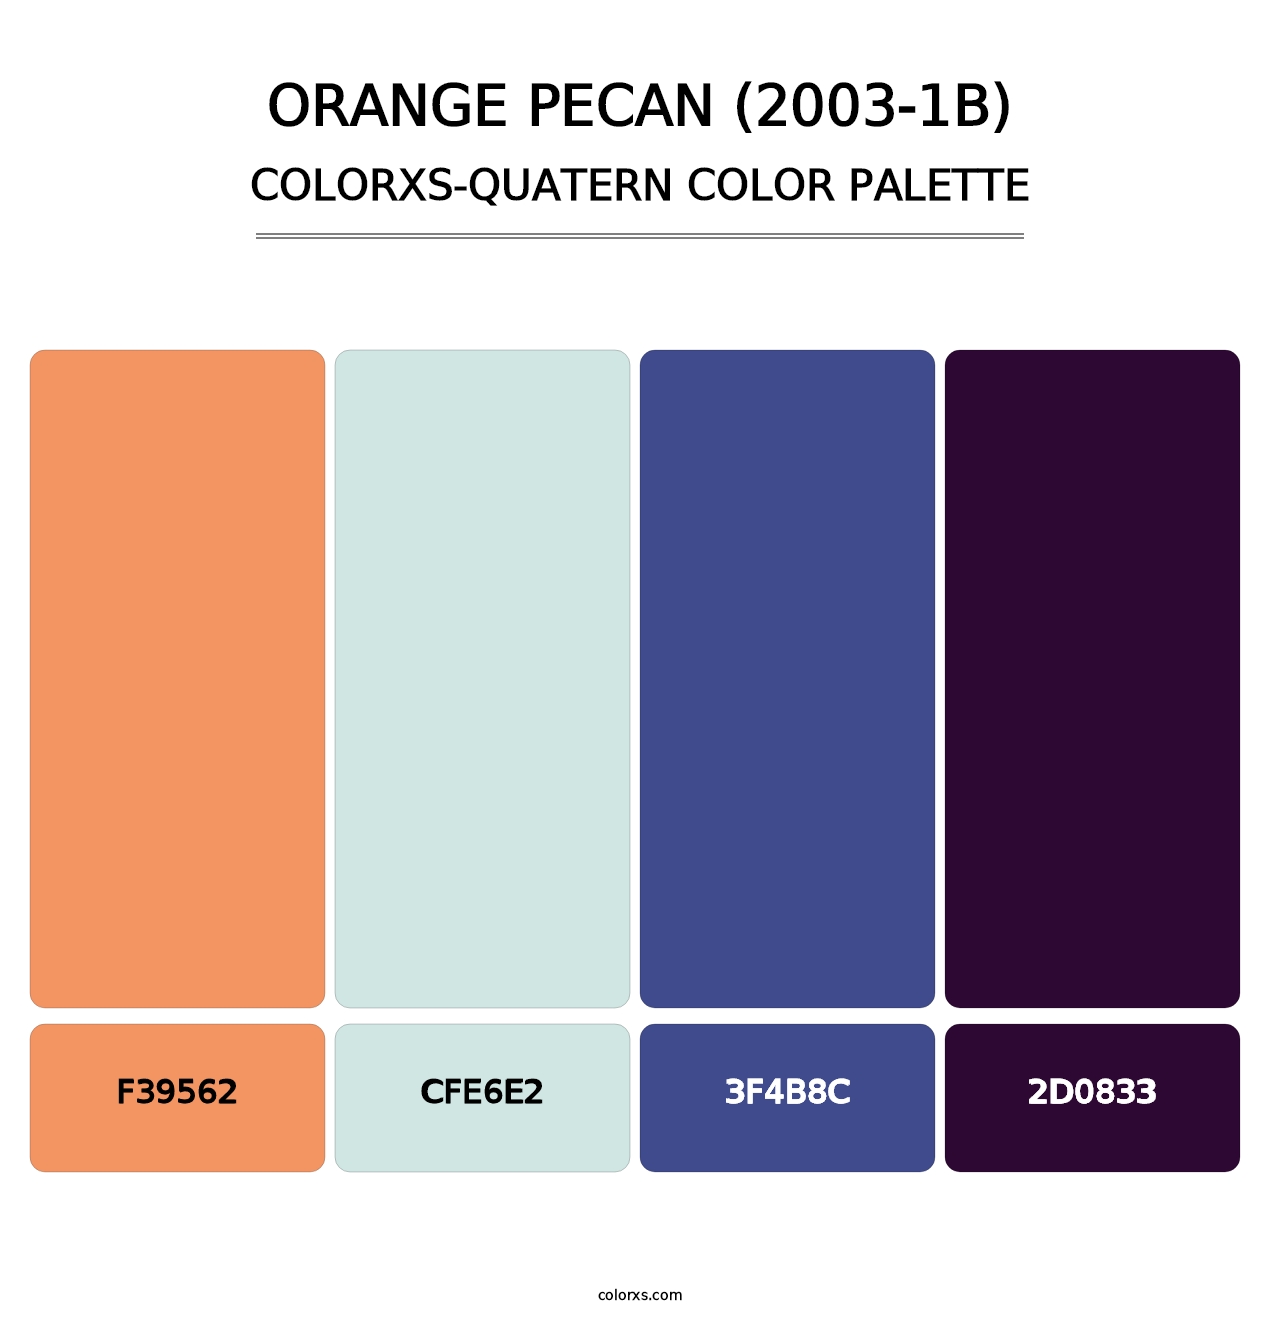 Orange Pecan (2003-1B) - Colorxs Quatern Palette